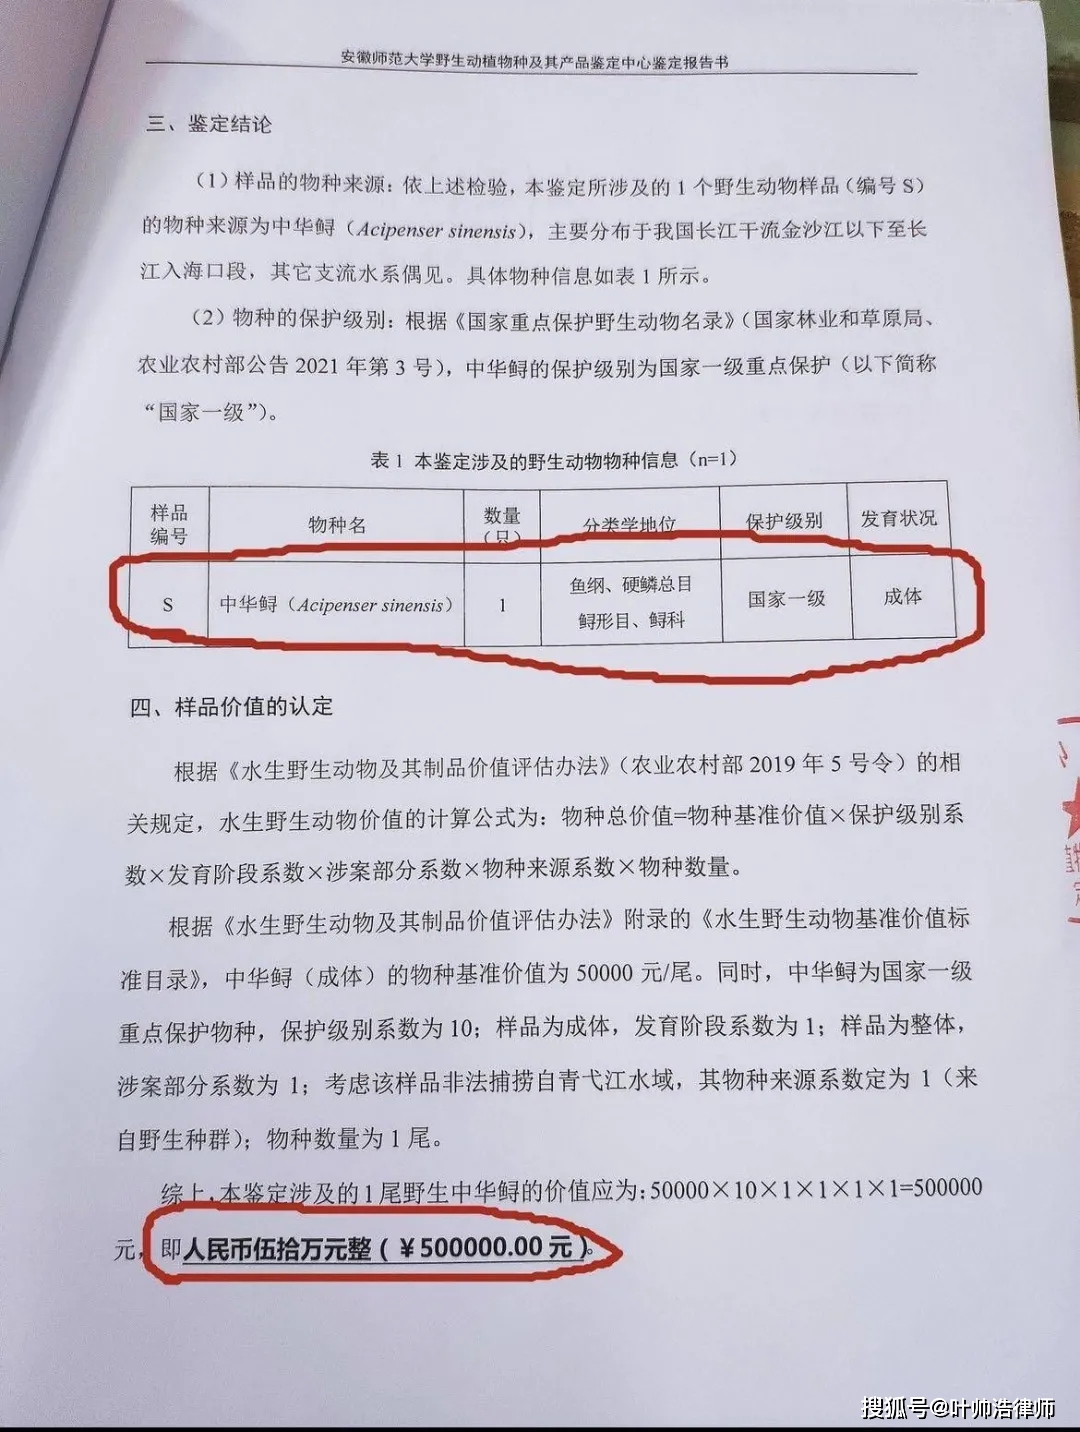 安徽芜湖一男子分食价值50万元野生中华鲟还在网上发视频炫耀被抓